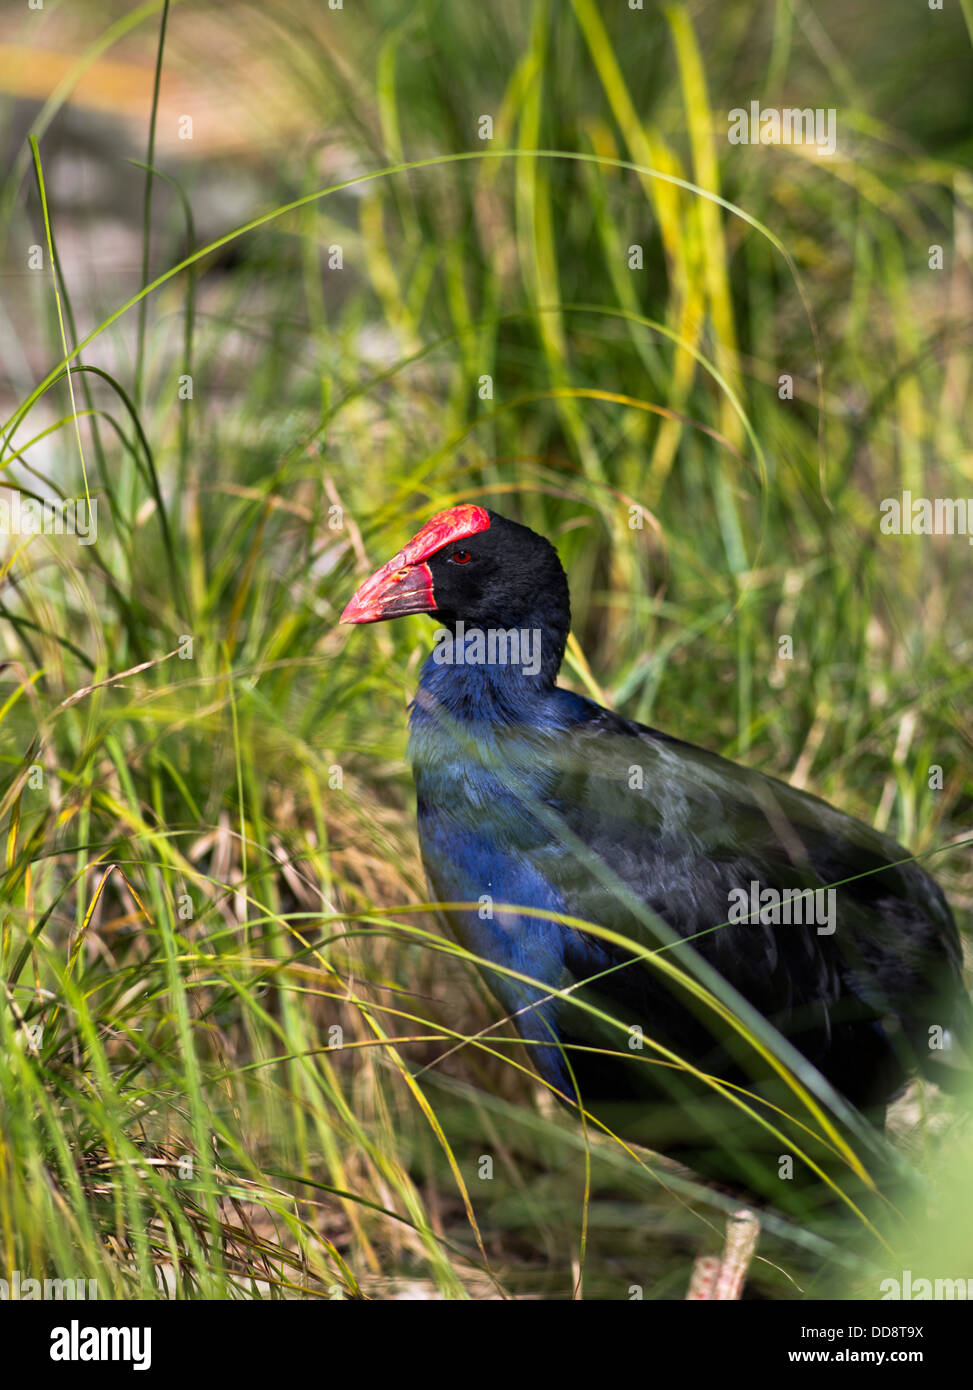 Dh Pukeko Nouvelle-zélande oiseaux talève sultane Porphyrio porphyrio melanotus swamp hen bird sauvage faune Banque D'Images